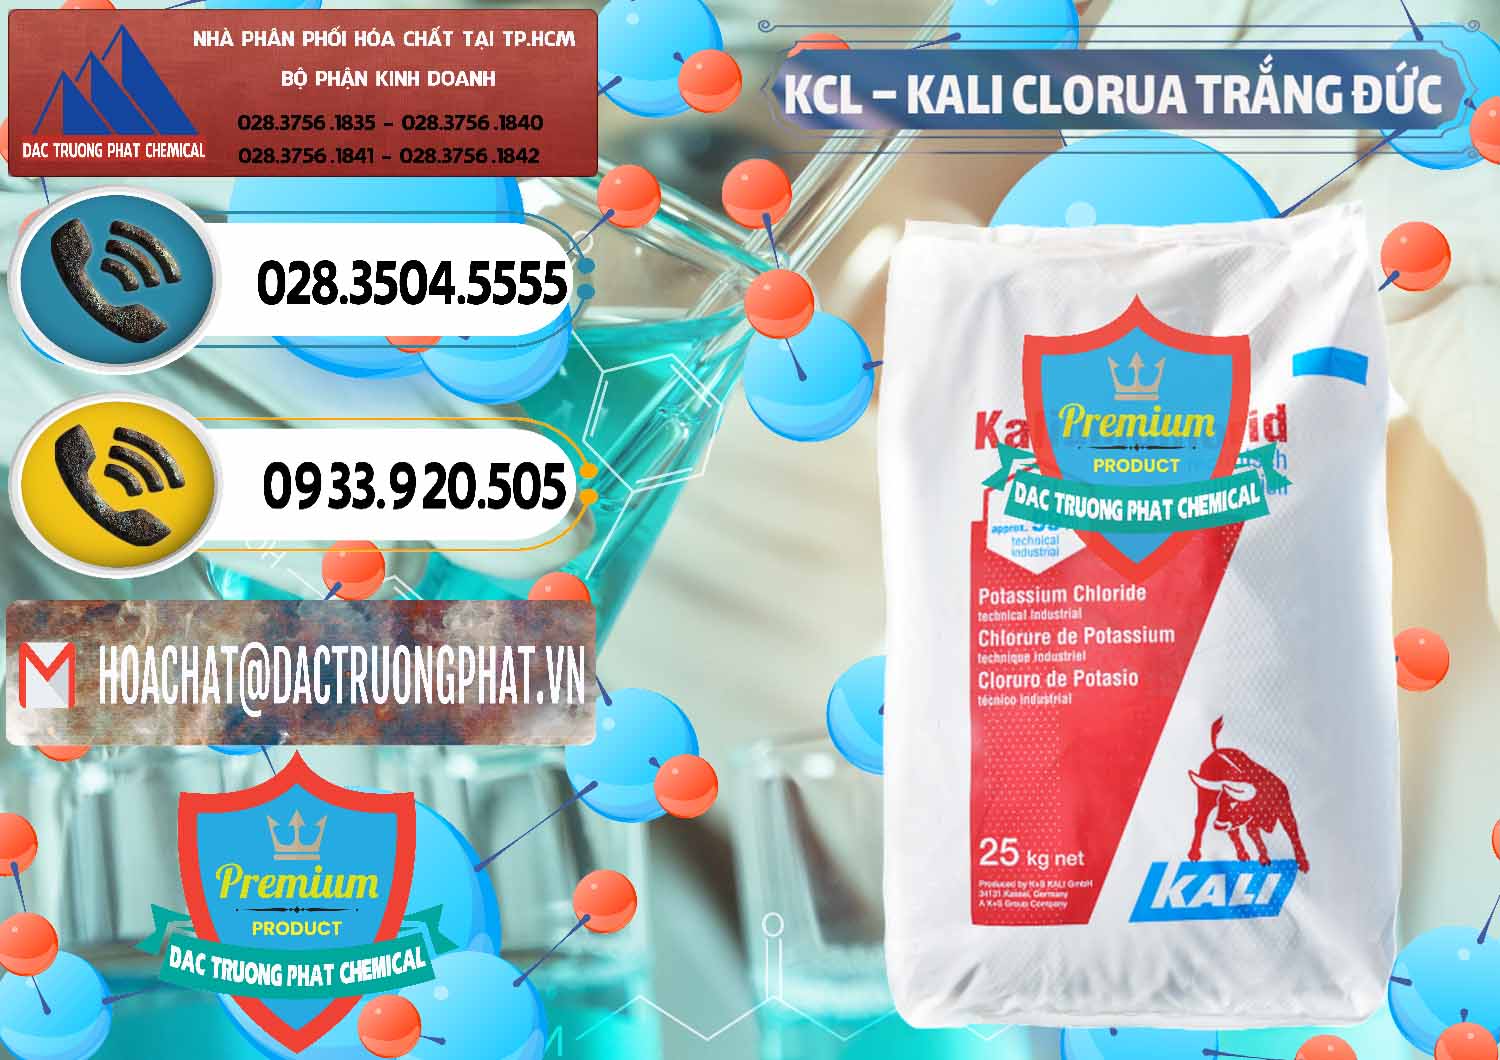 Cty cung cấp và bán KCL – Kali Clorua Trắng Đức Germany - 0086 - Đơn vị phân phối _ cung cấp hóa chất tại TP.HCM - hoachatdetnhuom.vn